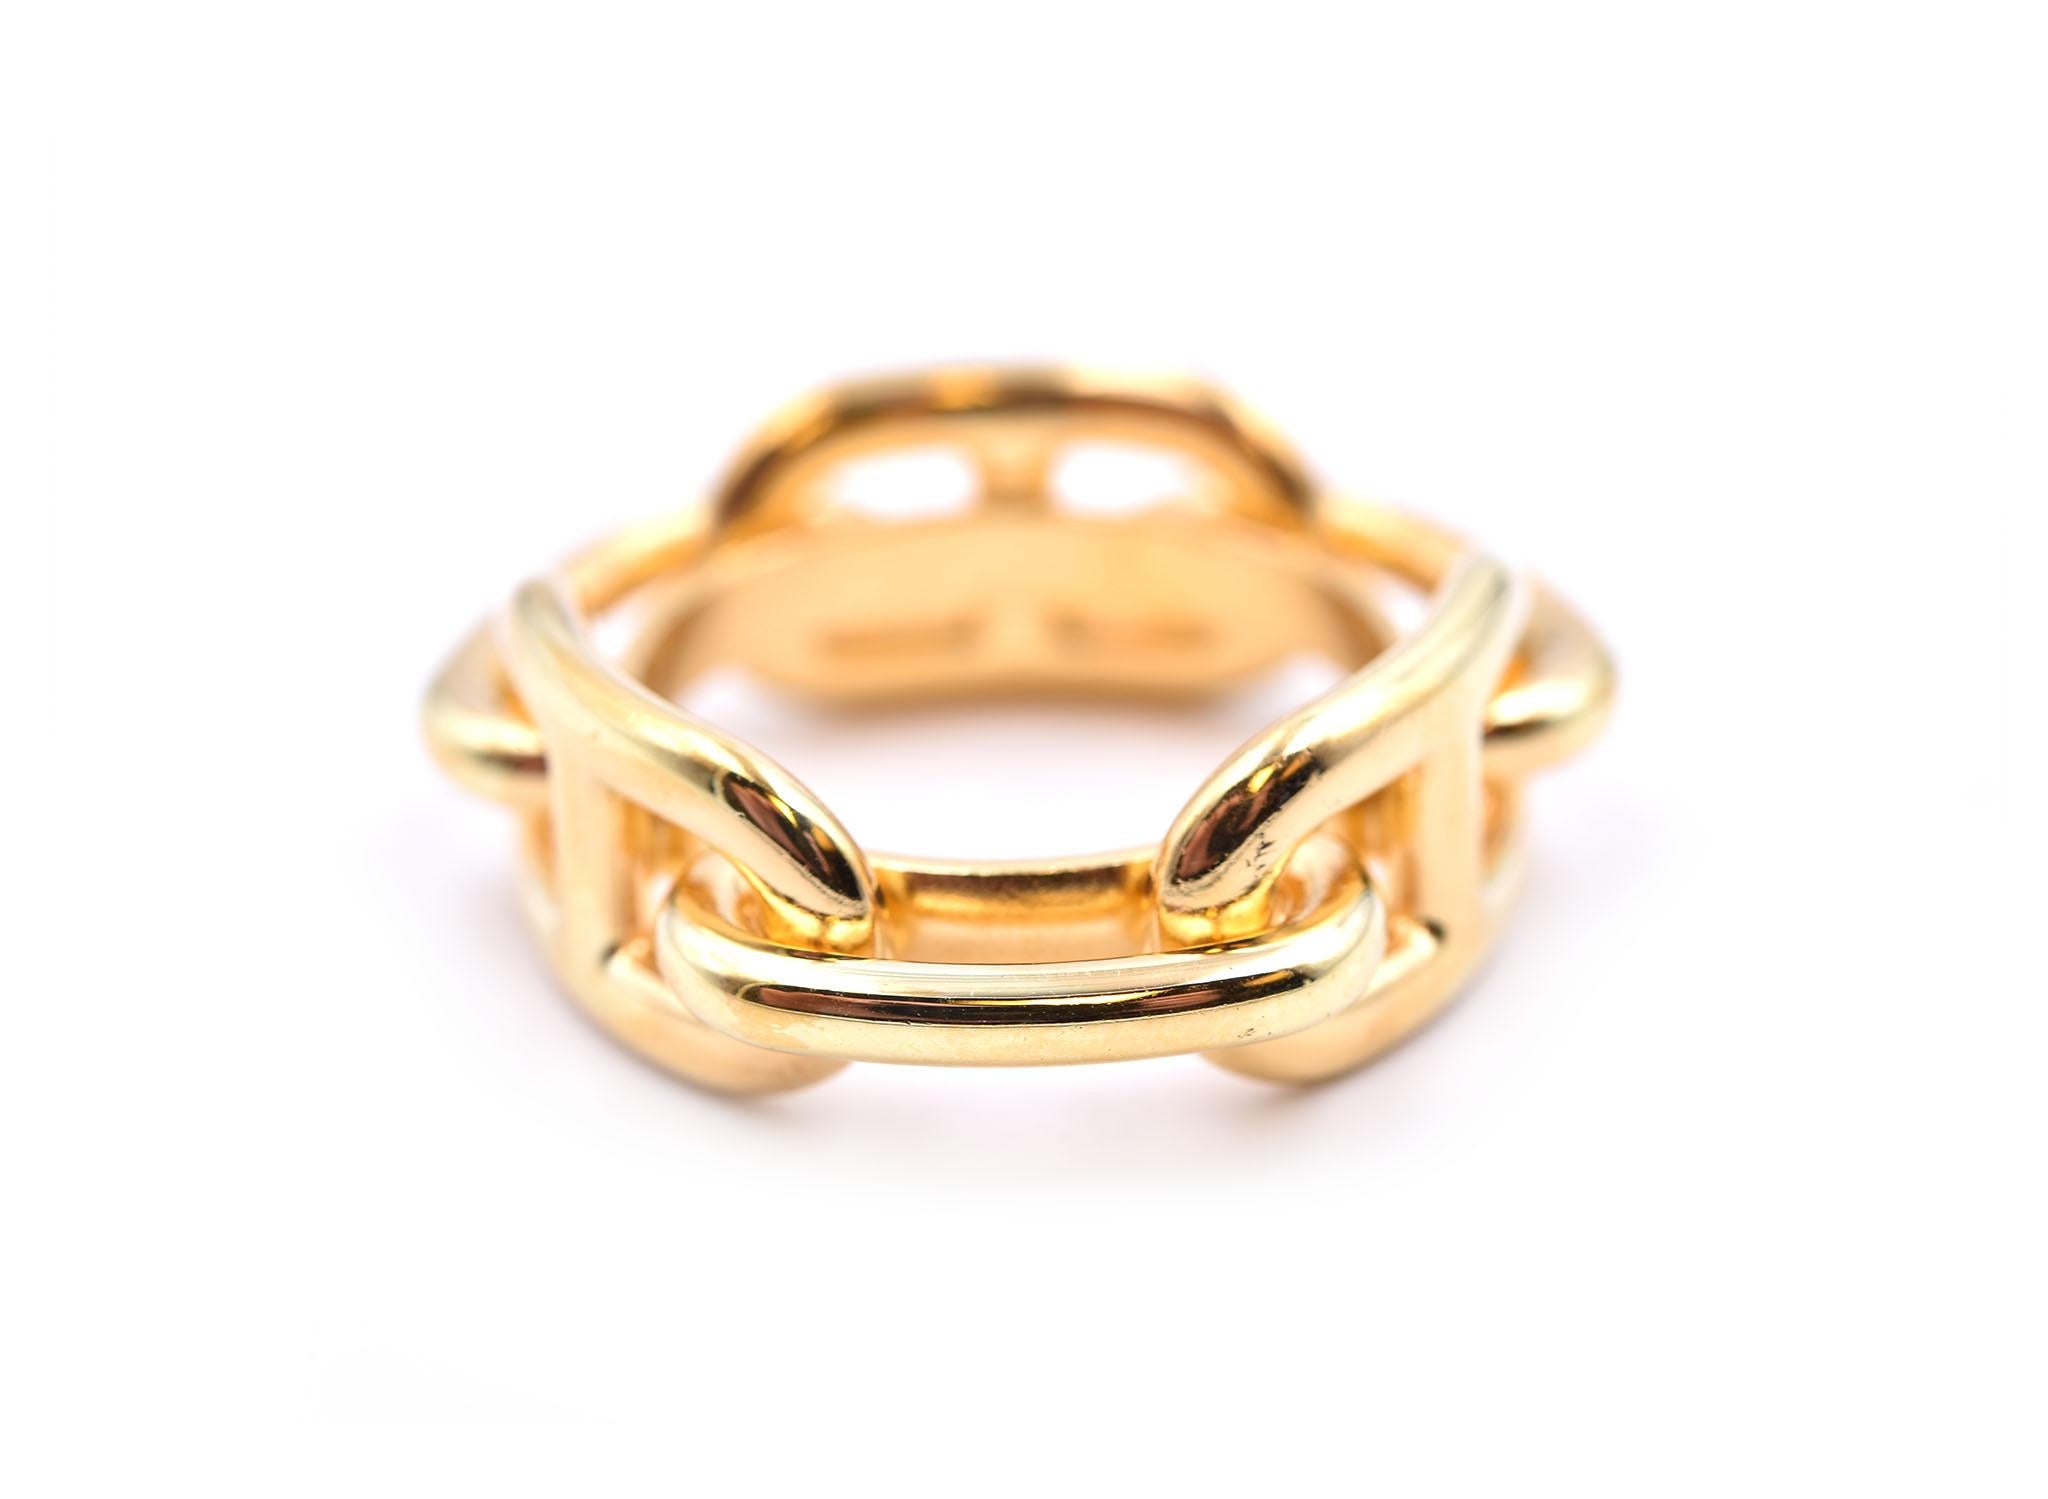 Concepteur : Hermès
Matériau : plaqué or 
Dimensions : l'anneau mesure 20::80 mm de diamètre
Poids : 11.35 grammes